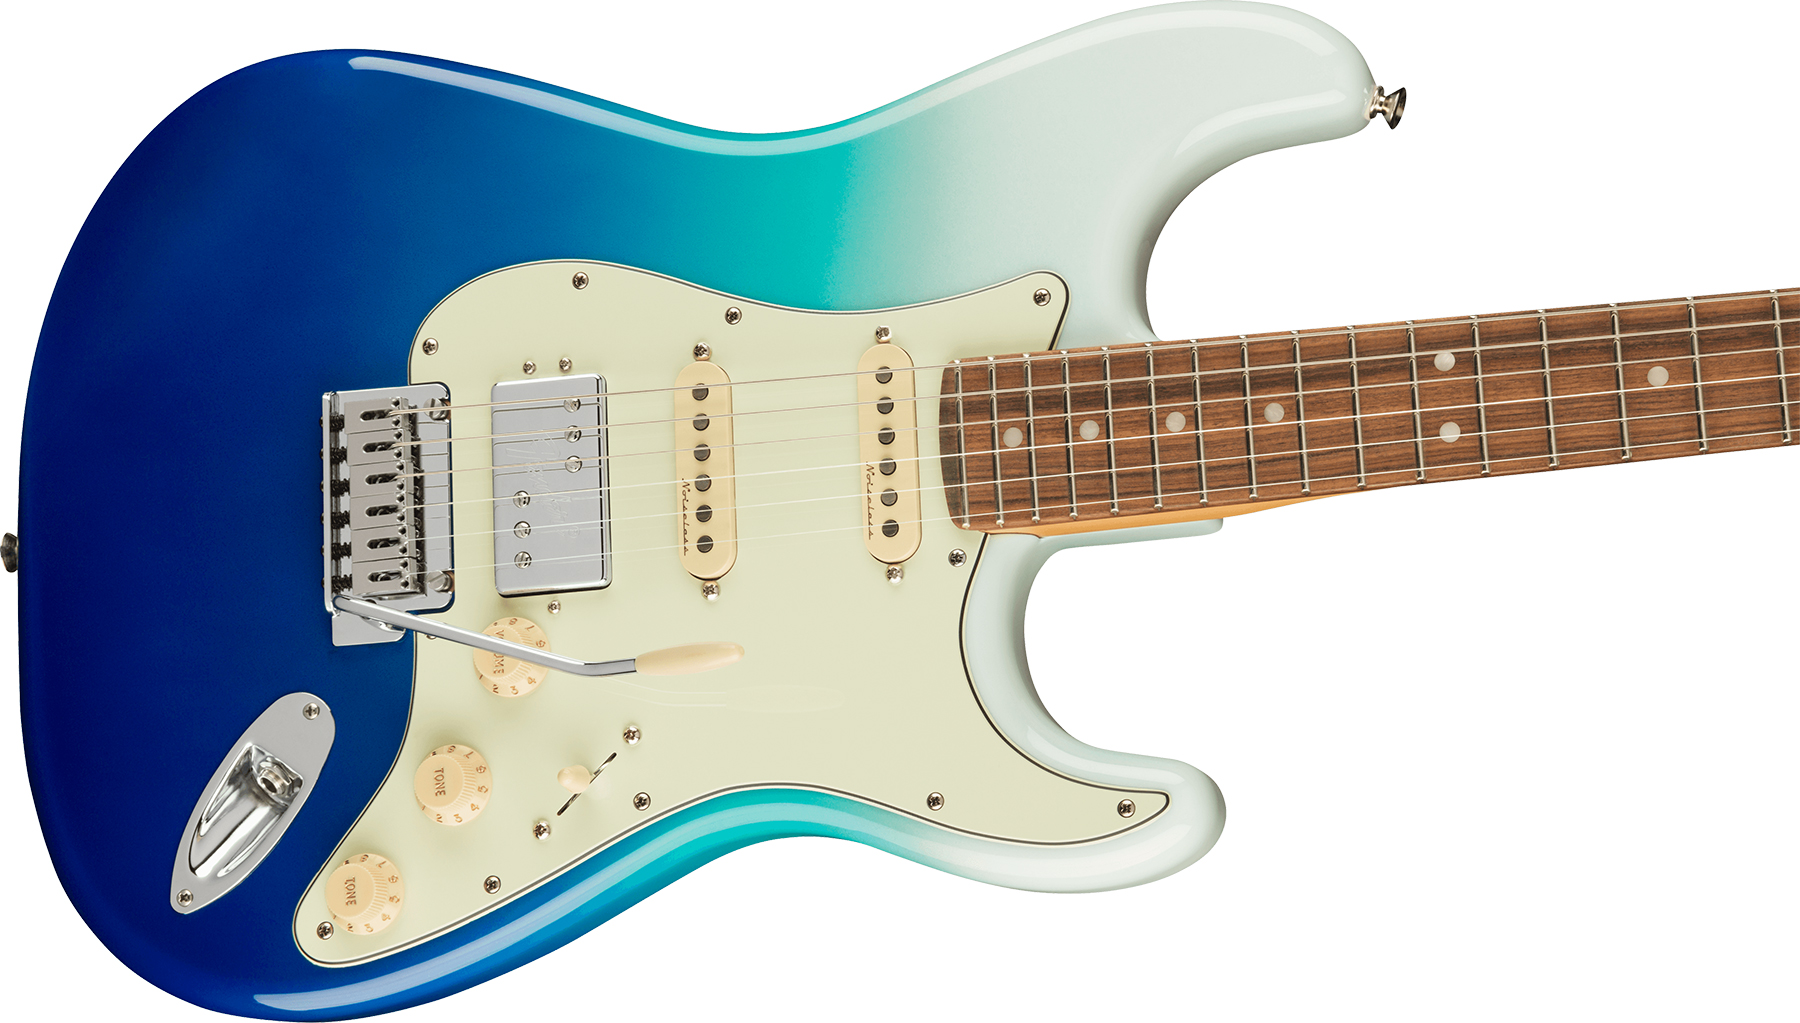 Fender Strat Player Plus Mex Hss Trem Pf - Belair Blue - Guitare Électrique Forme Str - Variation 2